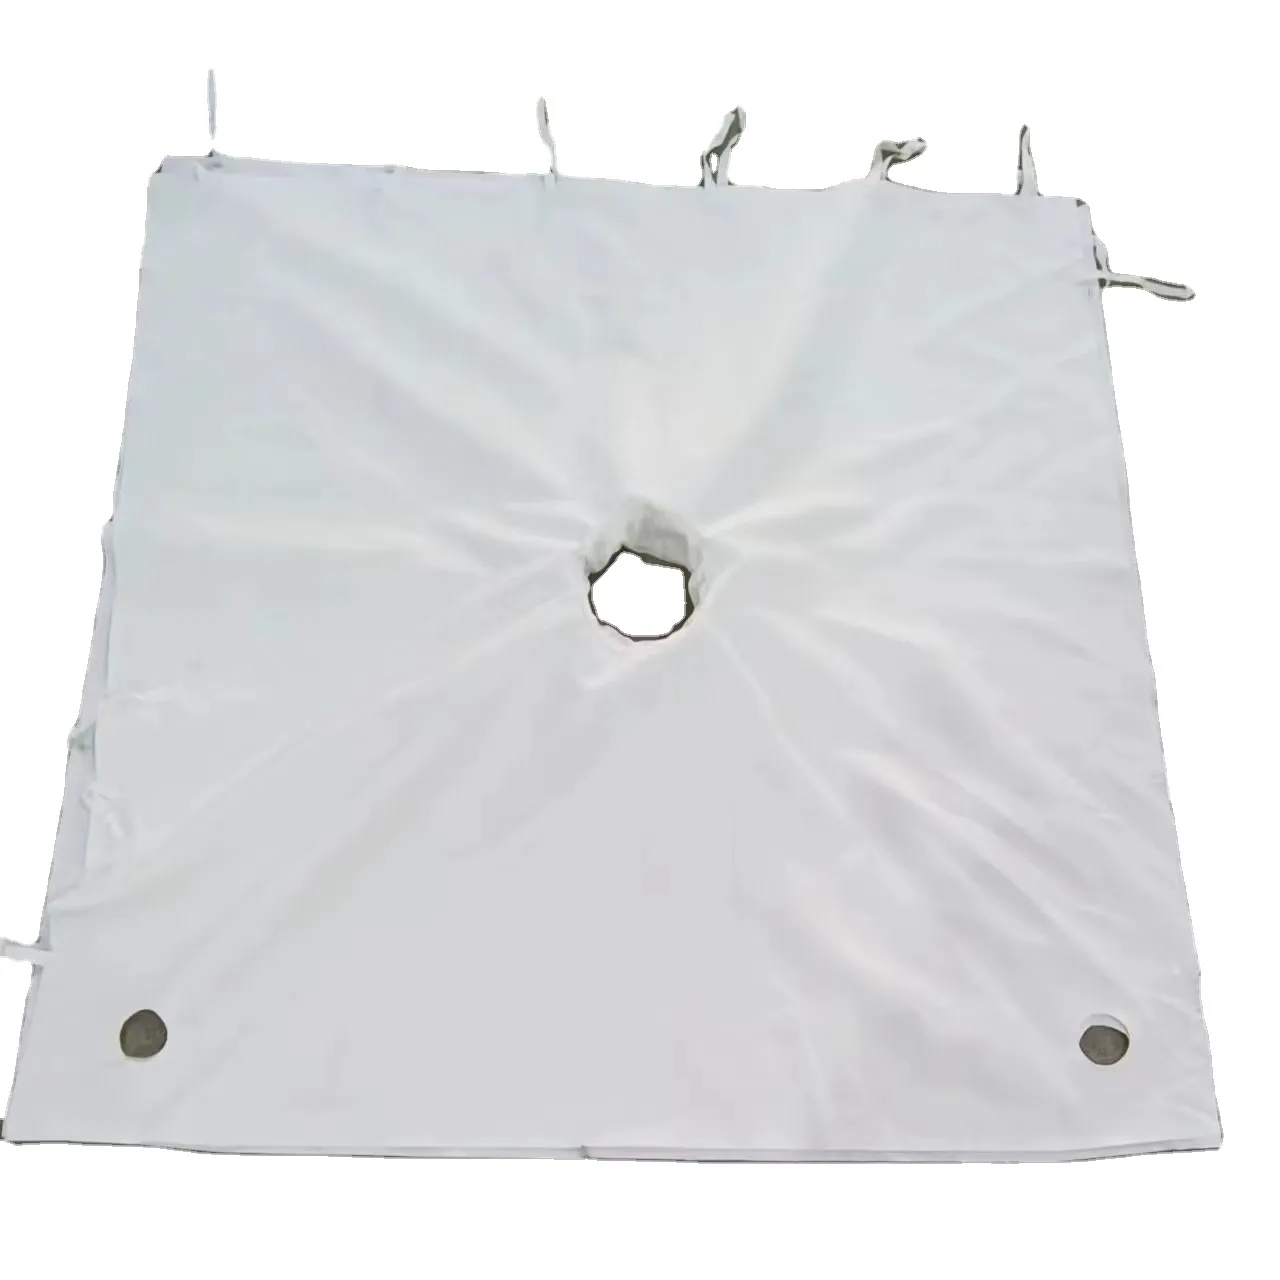 Diskon besar tas Filter cair kain Filter mikron untuk mesin pres Filter PA 1350*1350